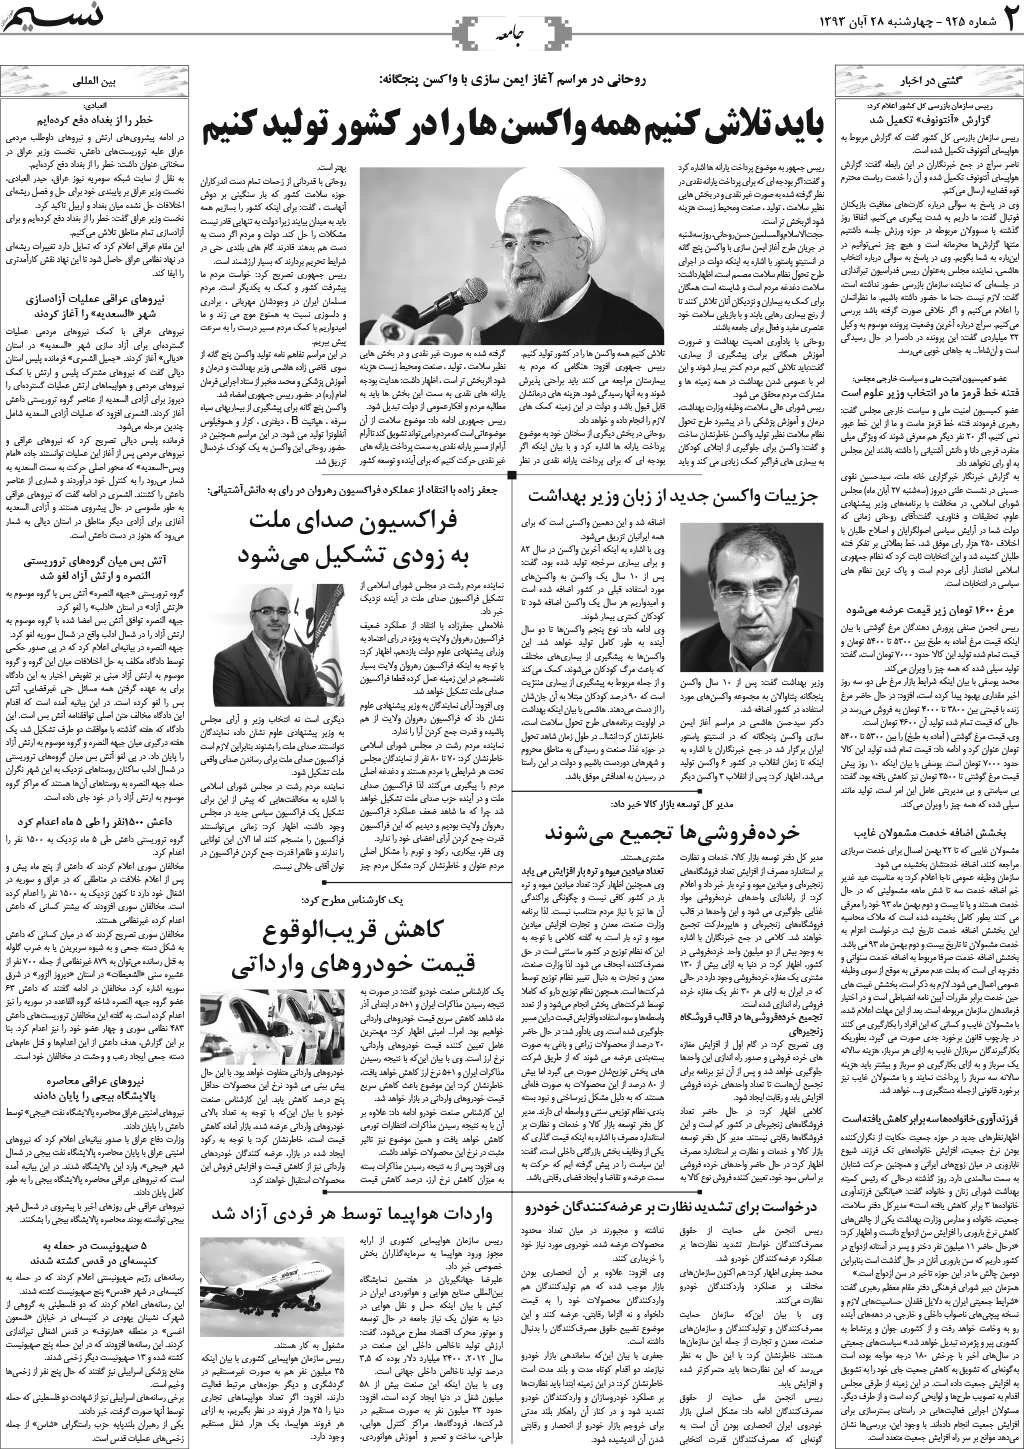 صفحه جامعه روزنامه نسیم شماره 925